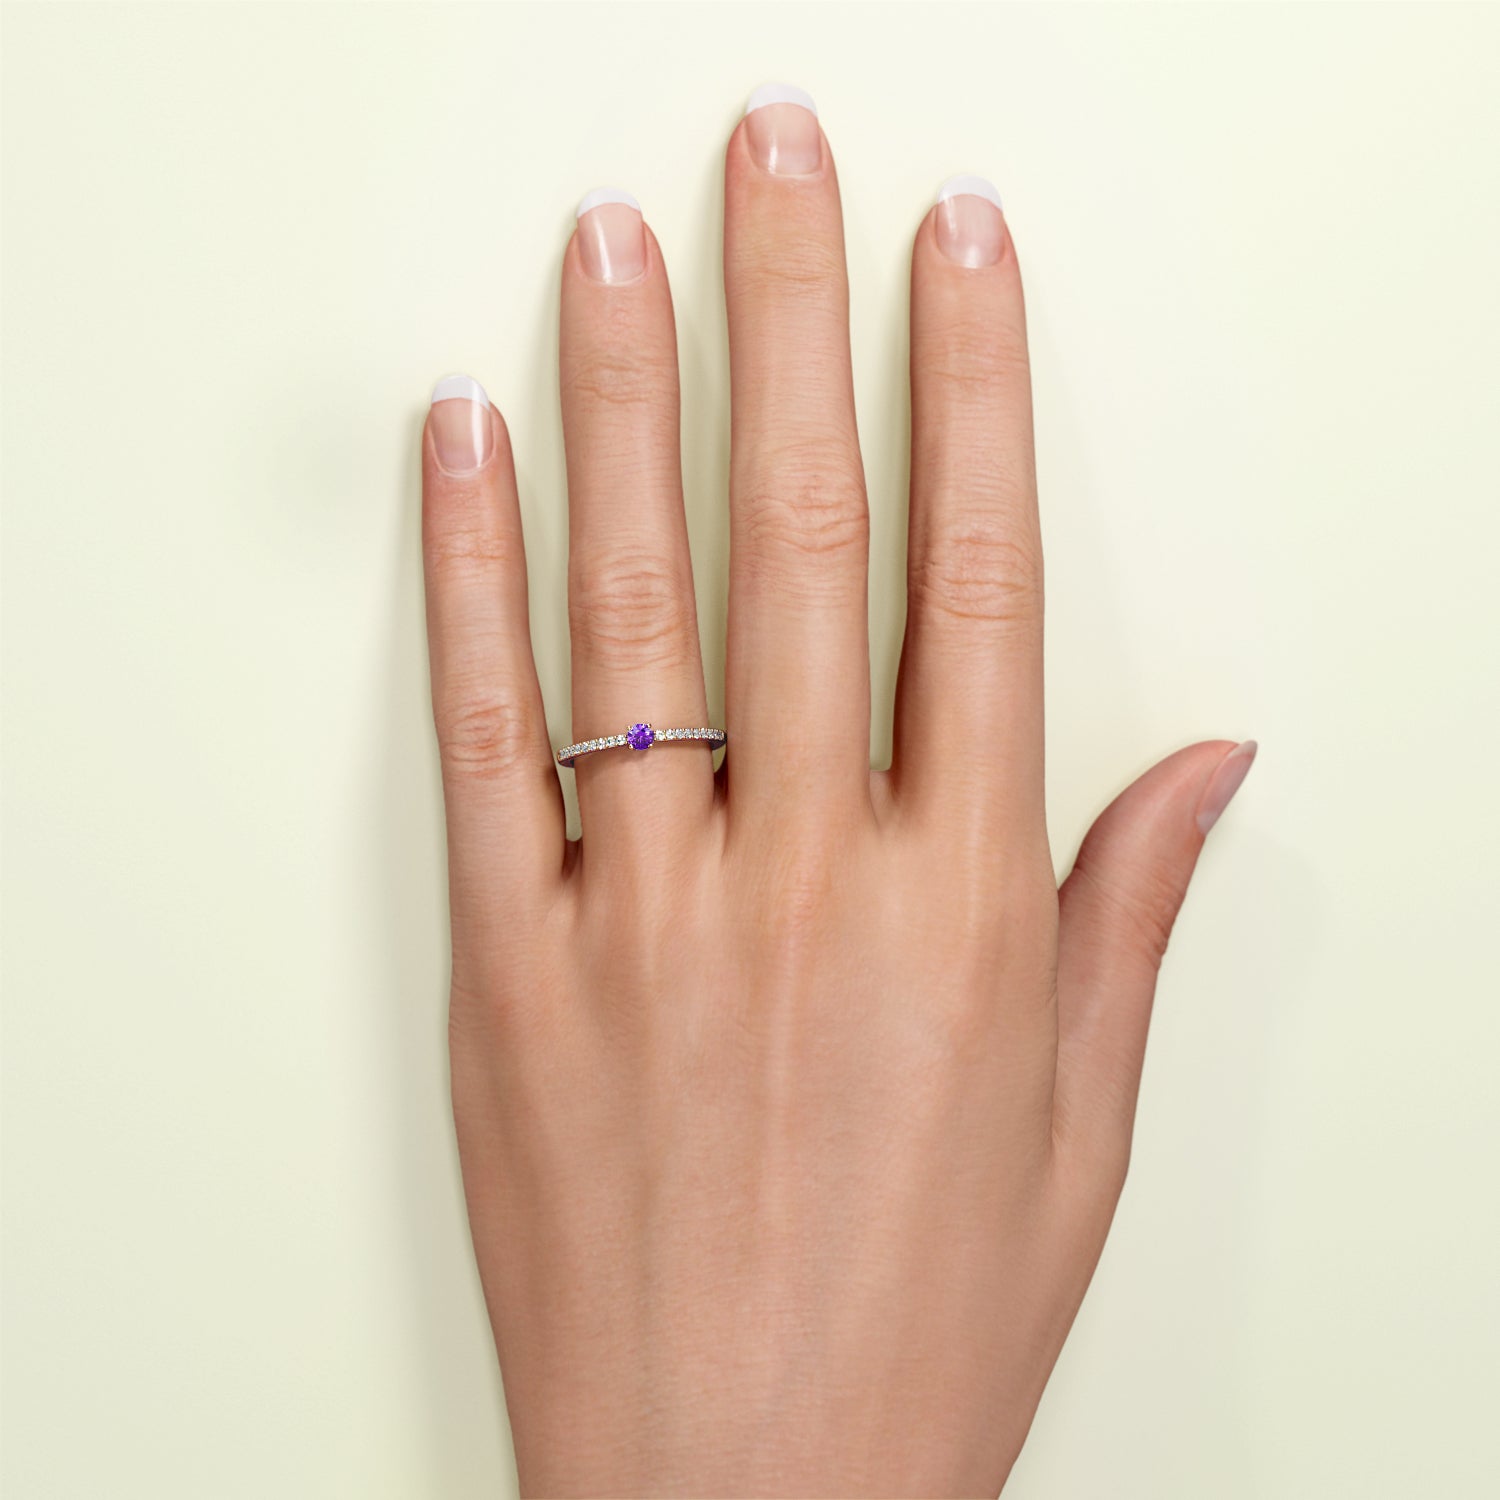 Birthstone Ring Februar in Roségold mit Amethyst und Diamanten, getragen am Finger.  Von FENA daily Jewellery.